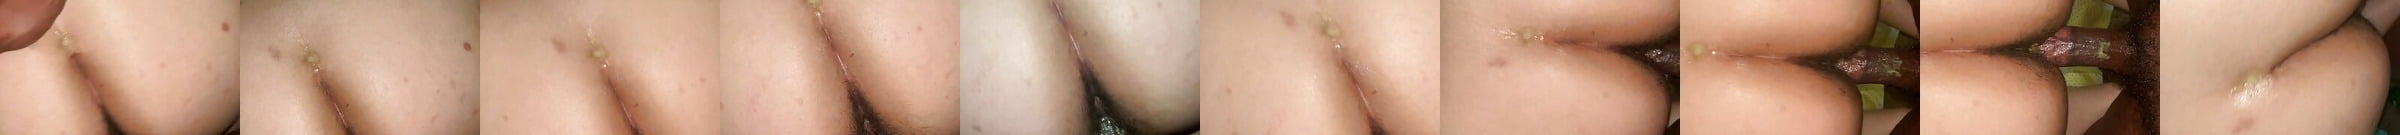 Wet Vagina Porn Videos 4 Xhamster